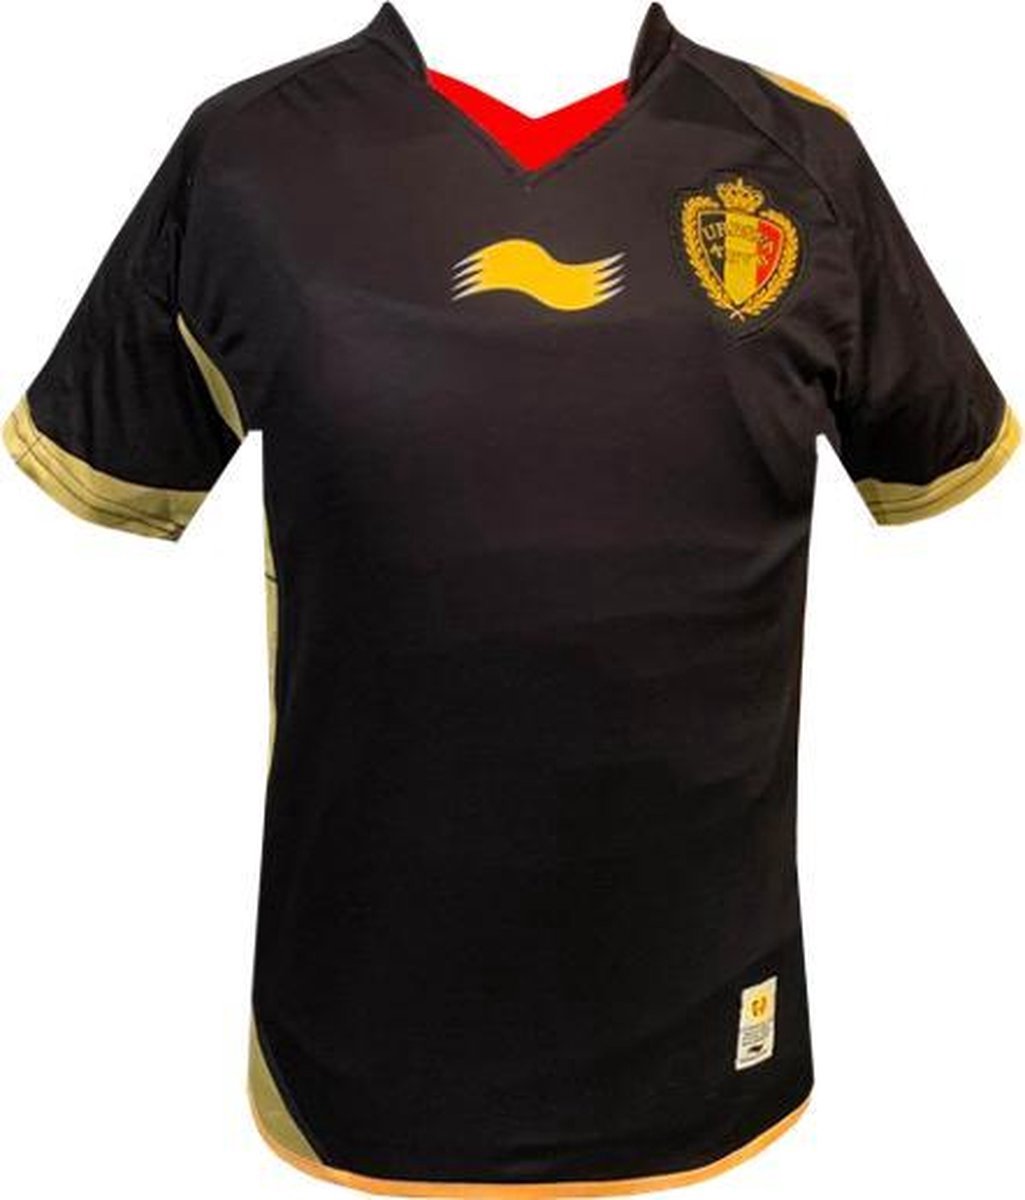 Rode Duivels - Vintage Official Match Shirt 2012 - Kinderen - Zwart - Maat: 11/12 jaar